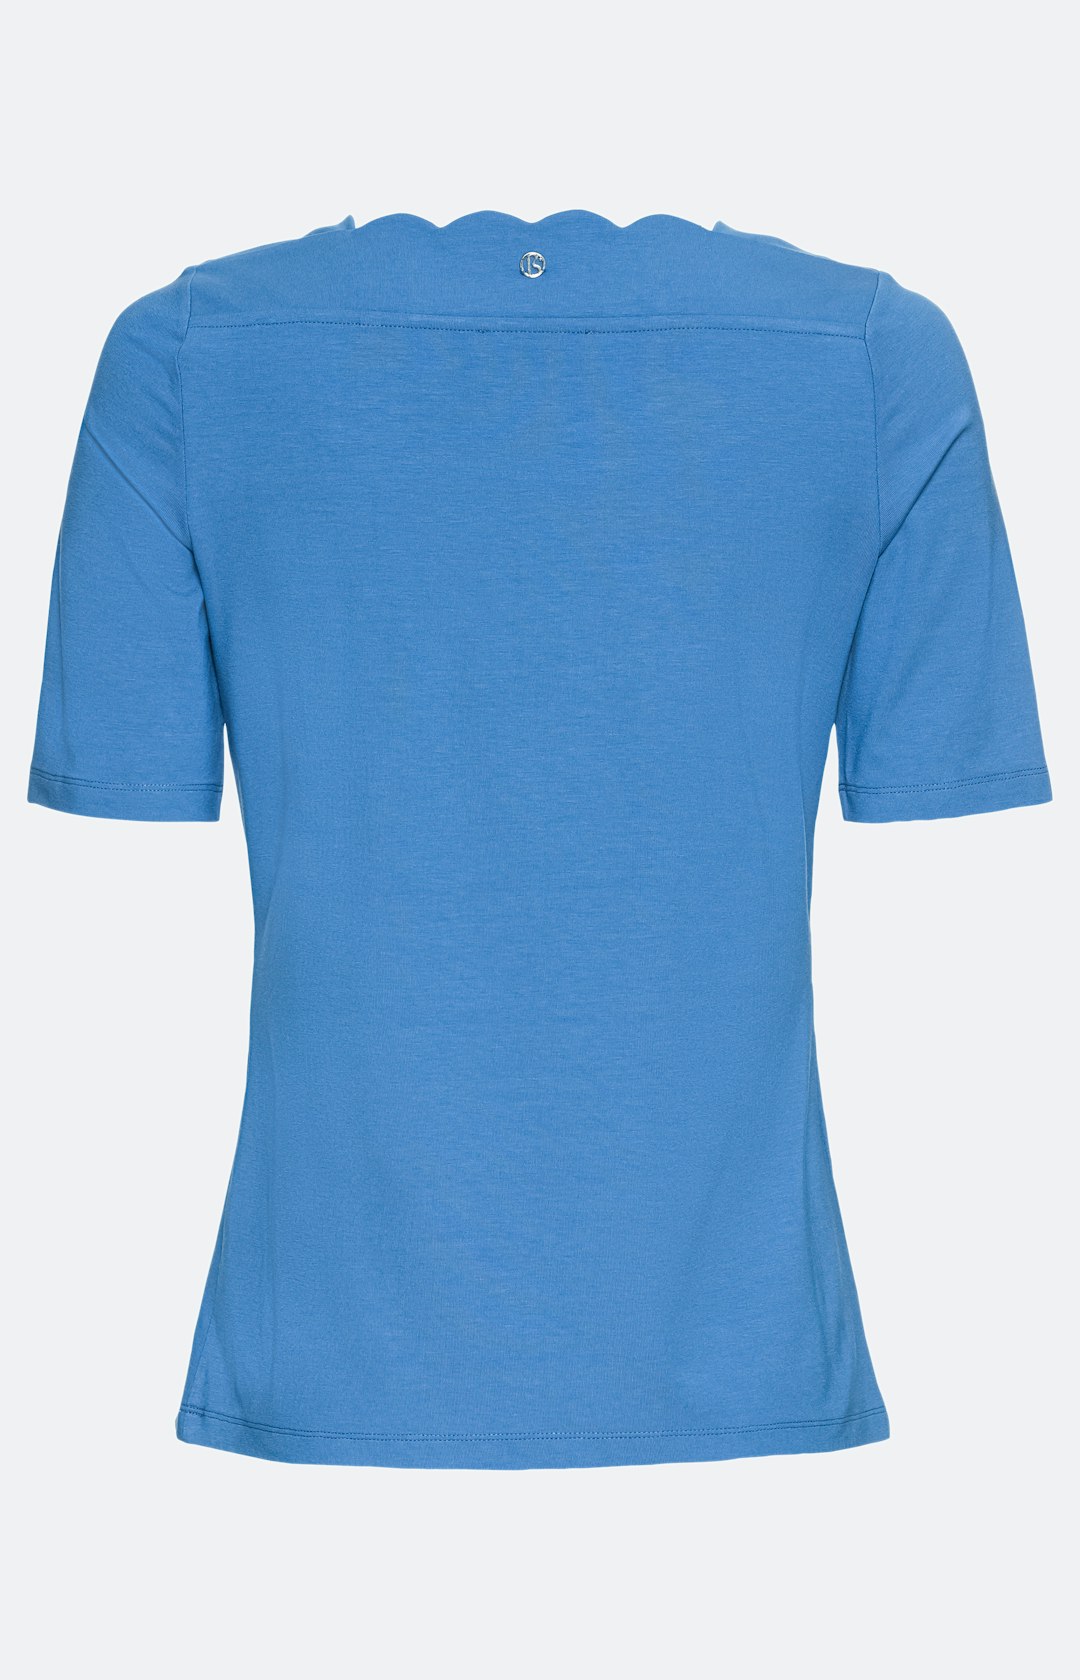 Halbarm-Shirt mit Trapez-Ausschnitt